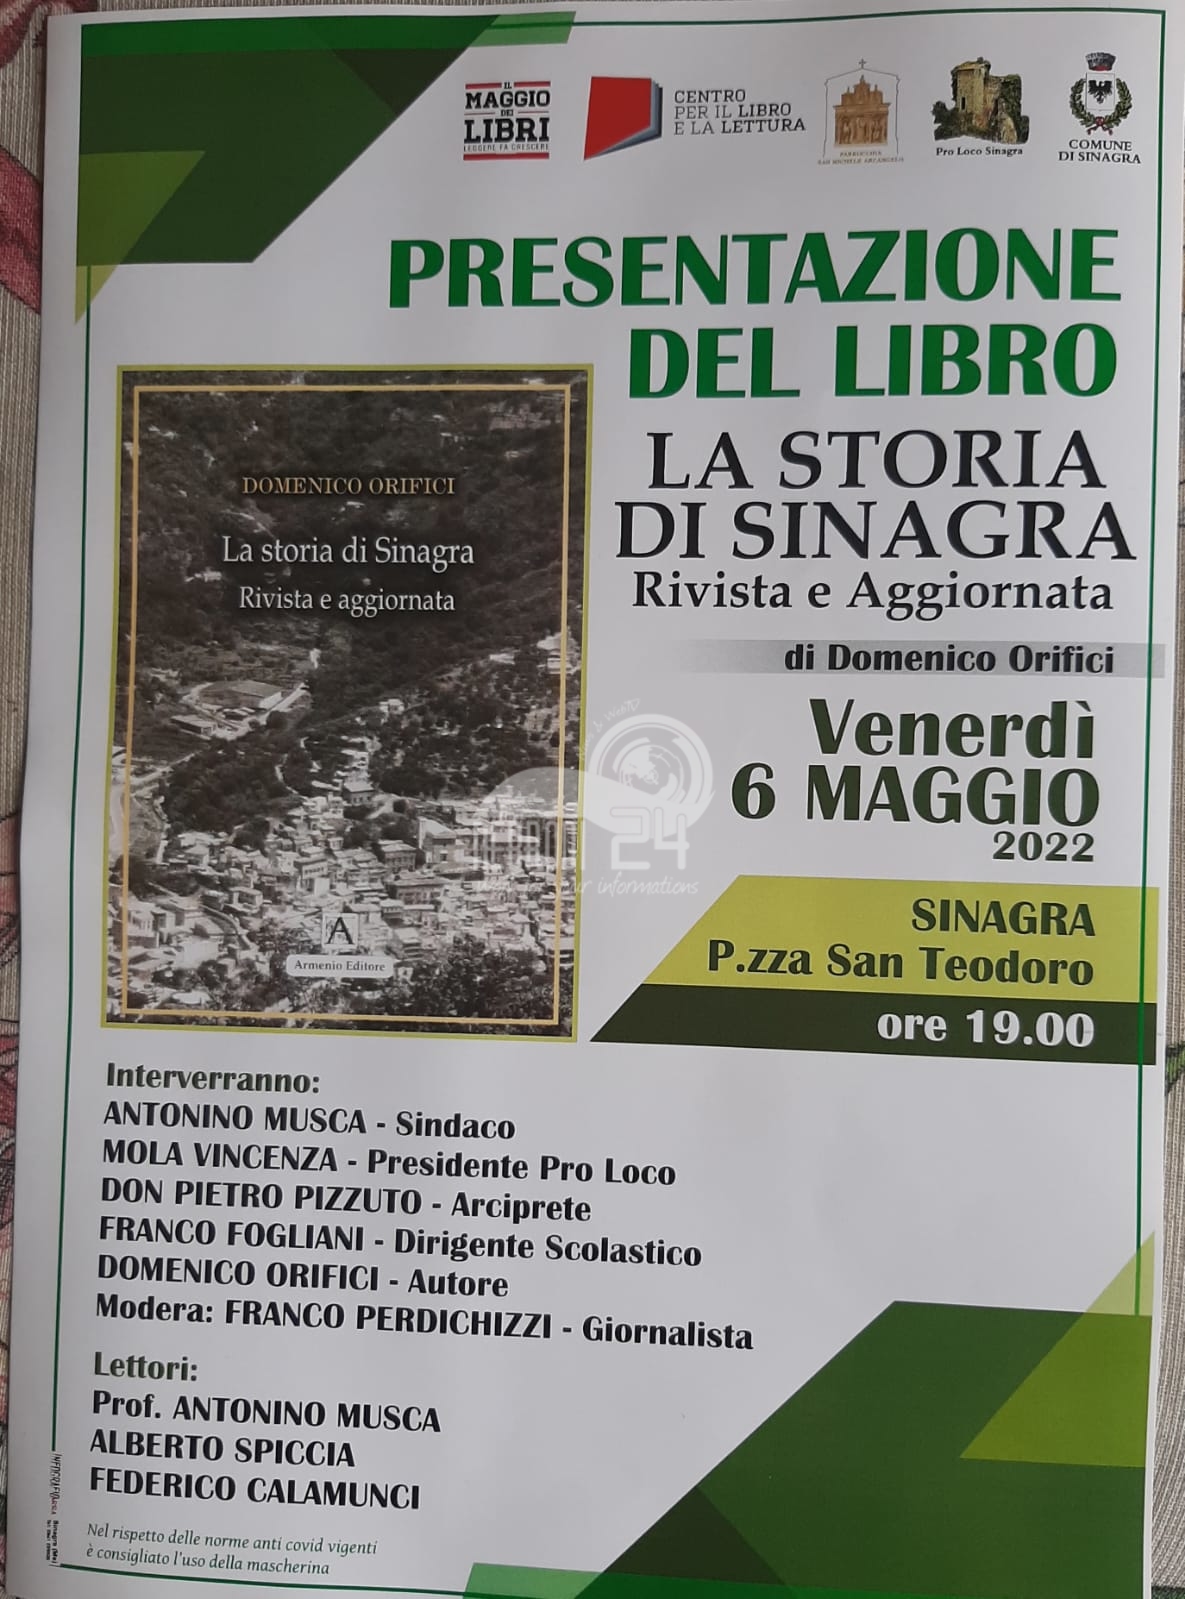 Sinagra –  Venerdi 6 maggio, Domenico Orifici presenta il suo libro  “La Storia di Sinagra” 